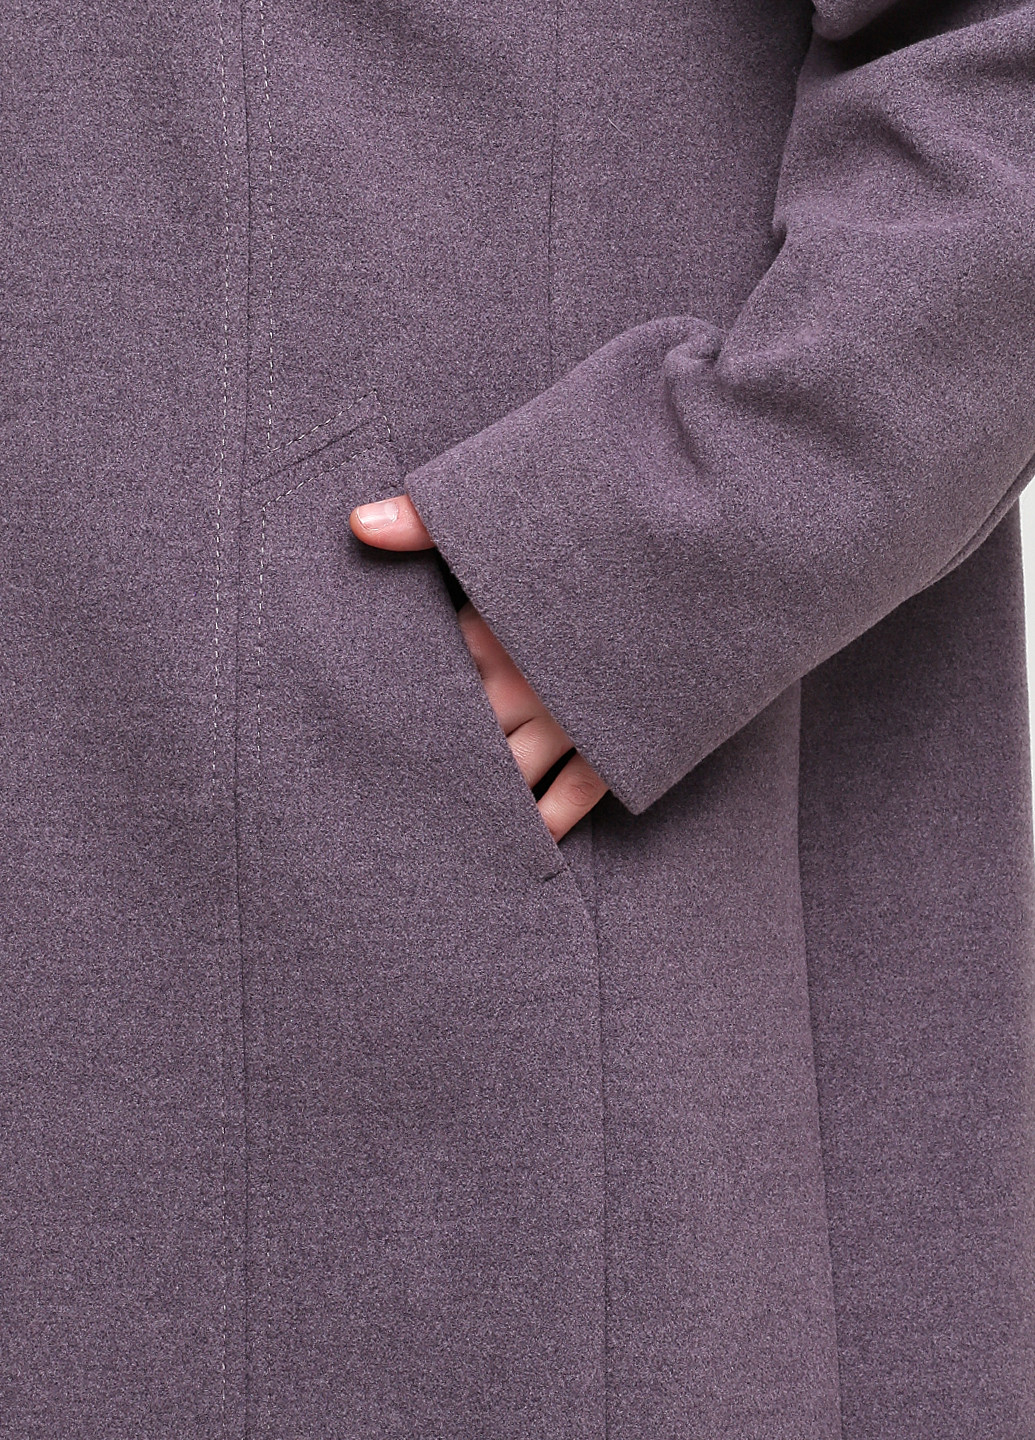 Фиолетовое демисезонное Пальто однобортное Шикарные меха